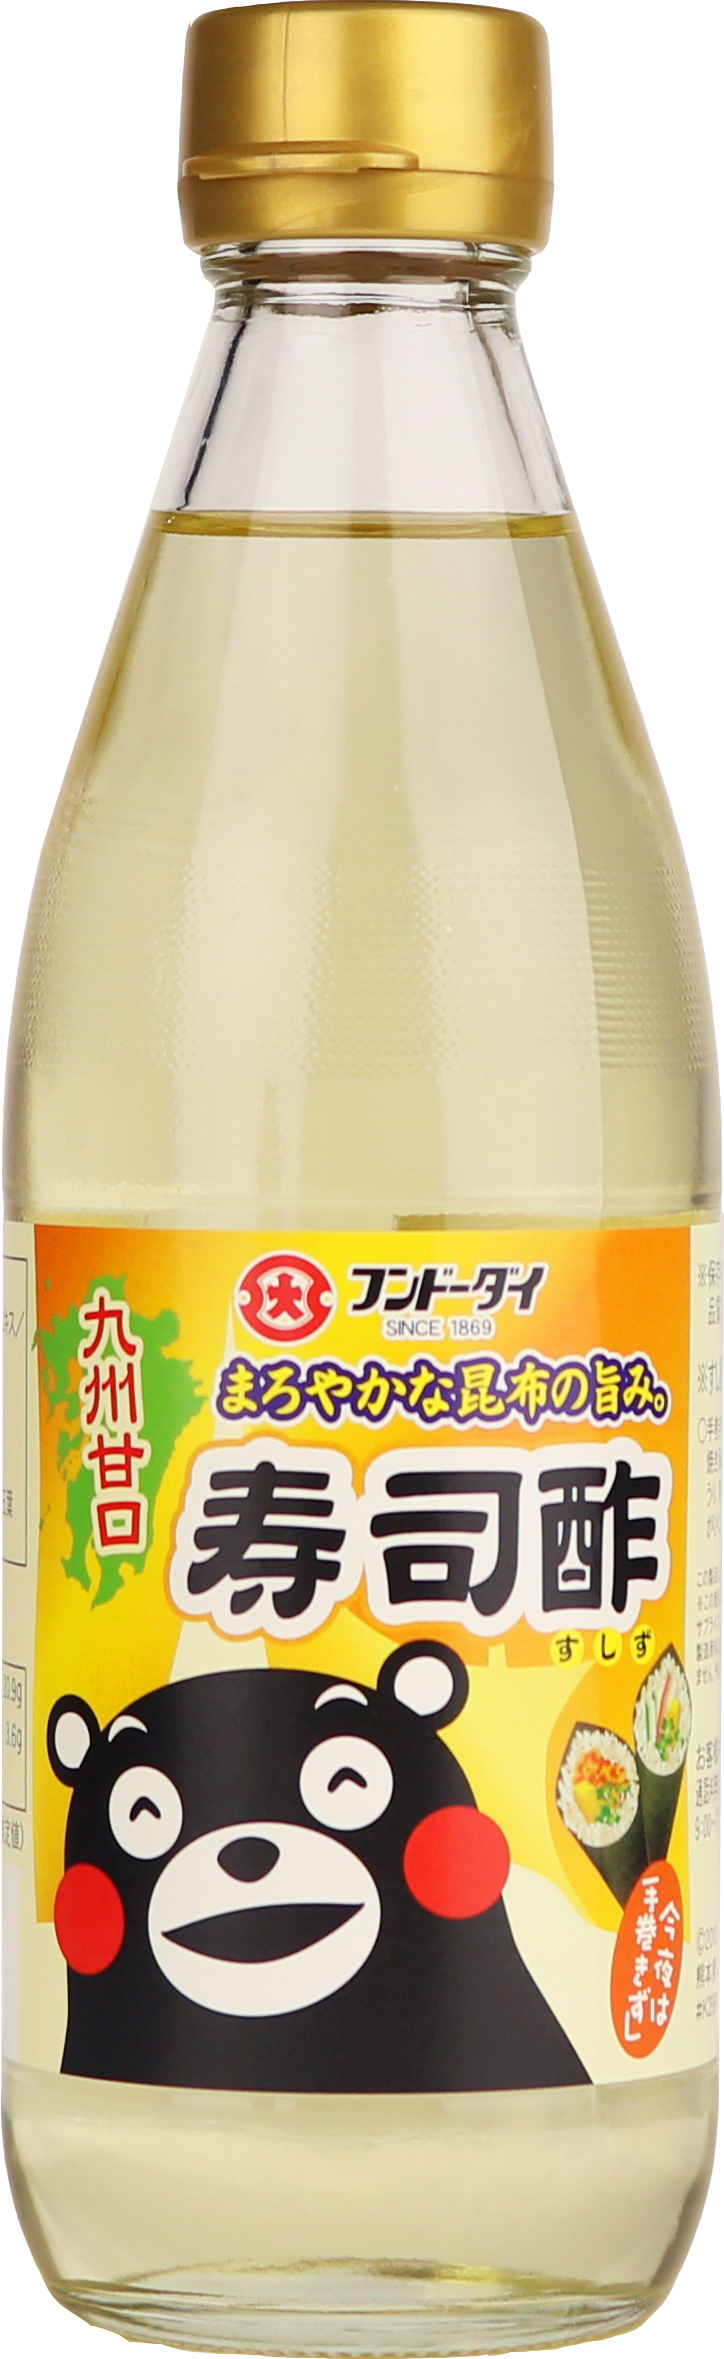 Sushi Vinegar 360ml Bottle